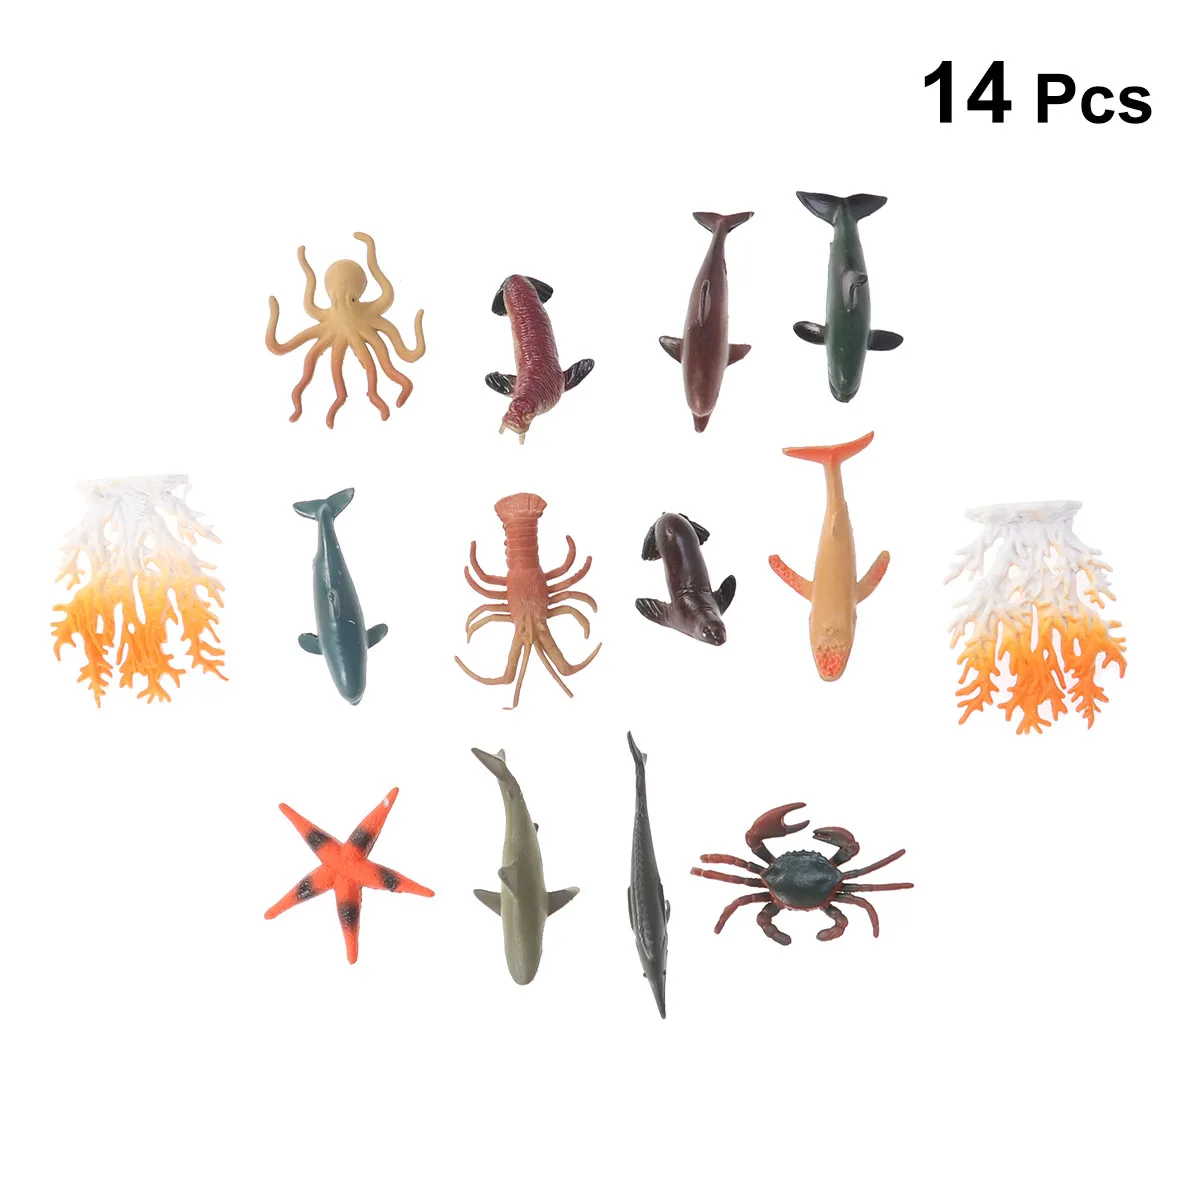 12 шт. морские игрушки для животных набор творческий пластик сходство море животные Развивающие игрушки для детей малышей ПВХ Цифры цвет